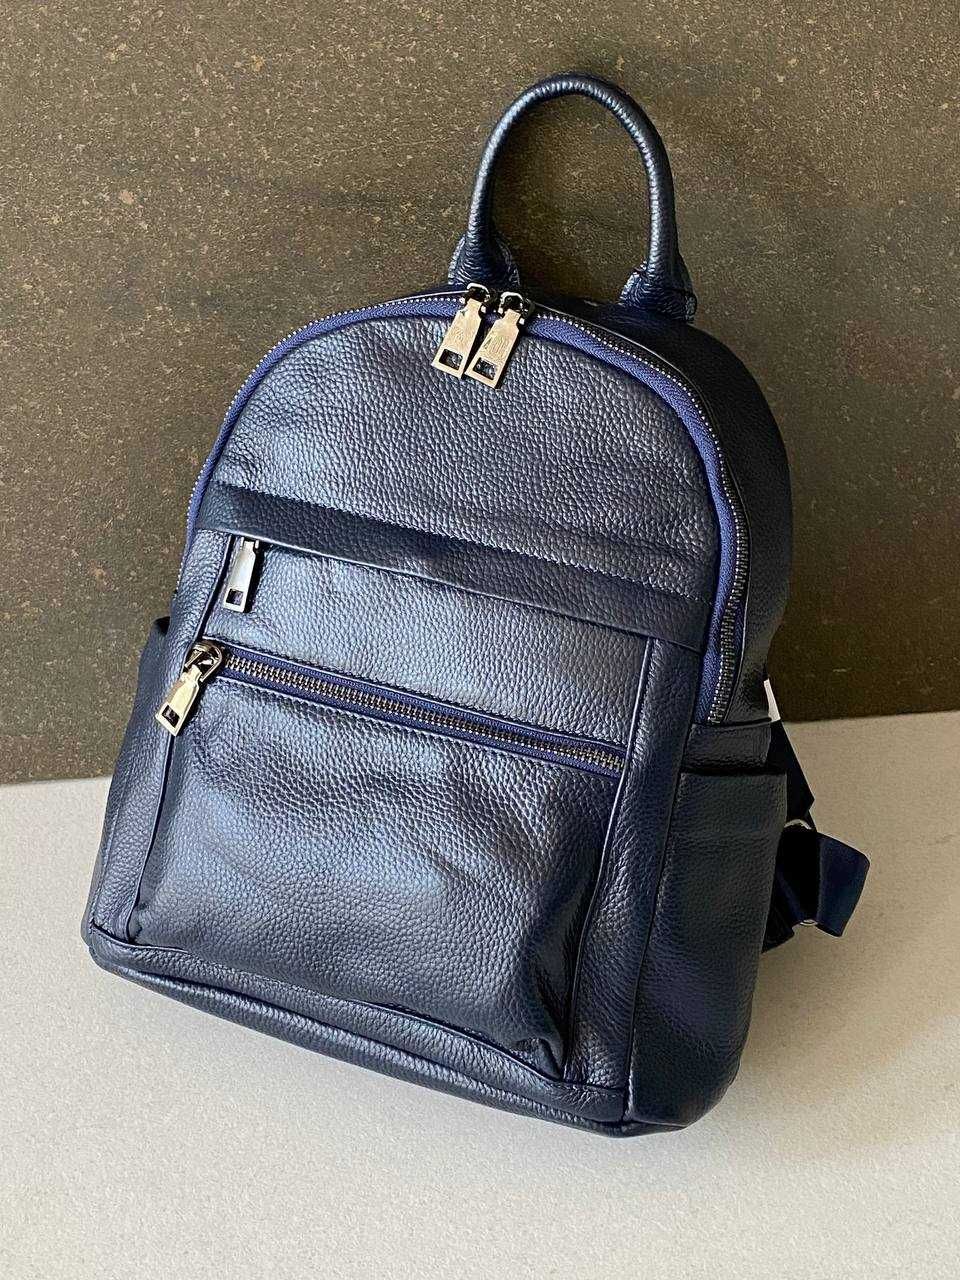 Кожаный женский рюкзак черный, беж, синий